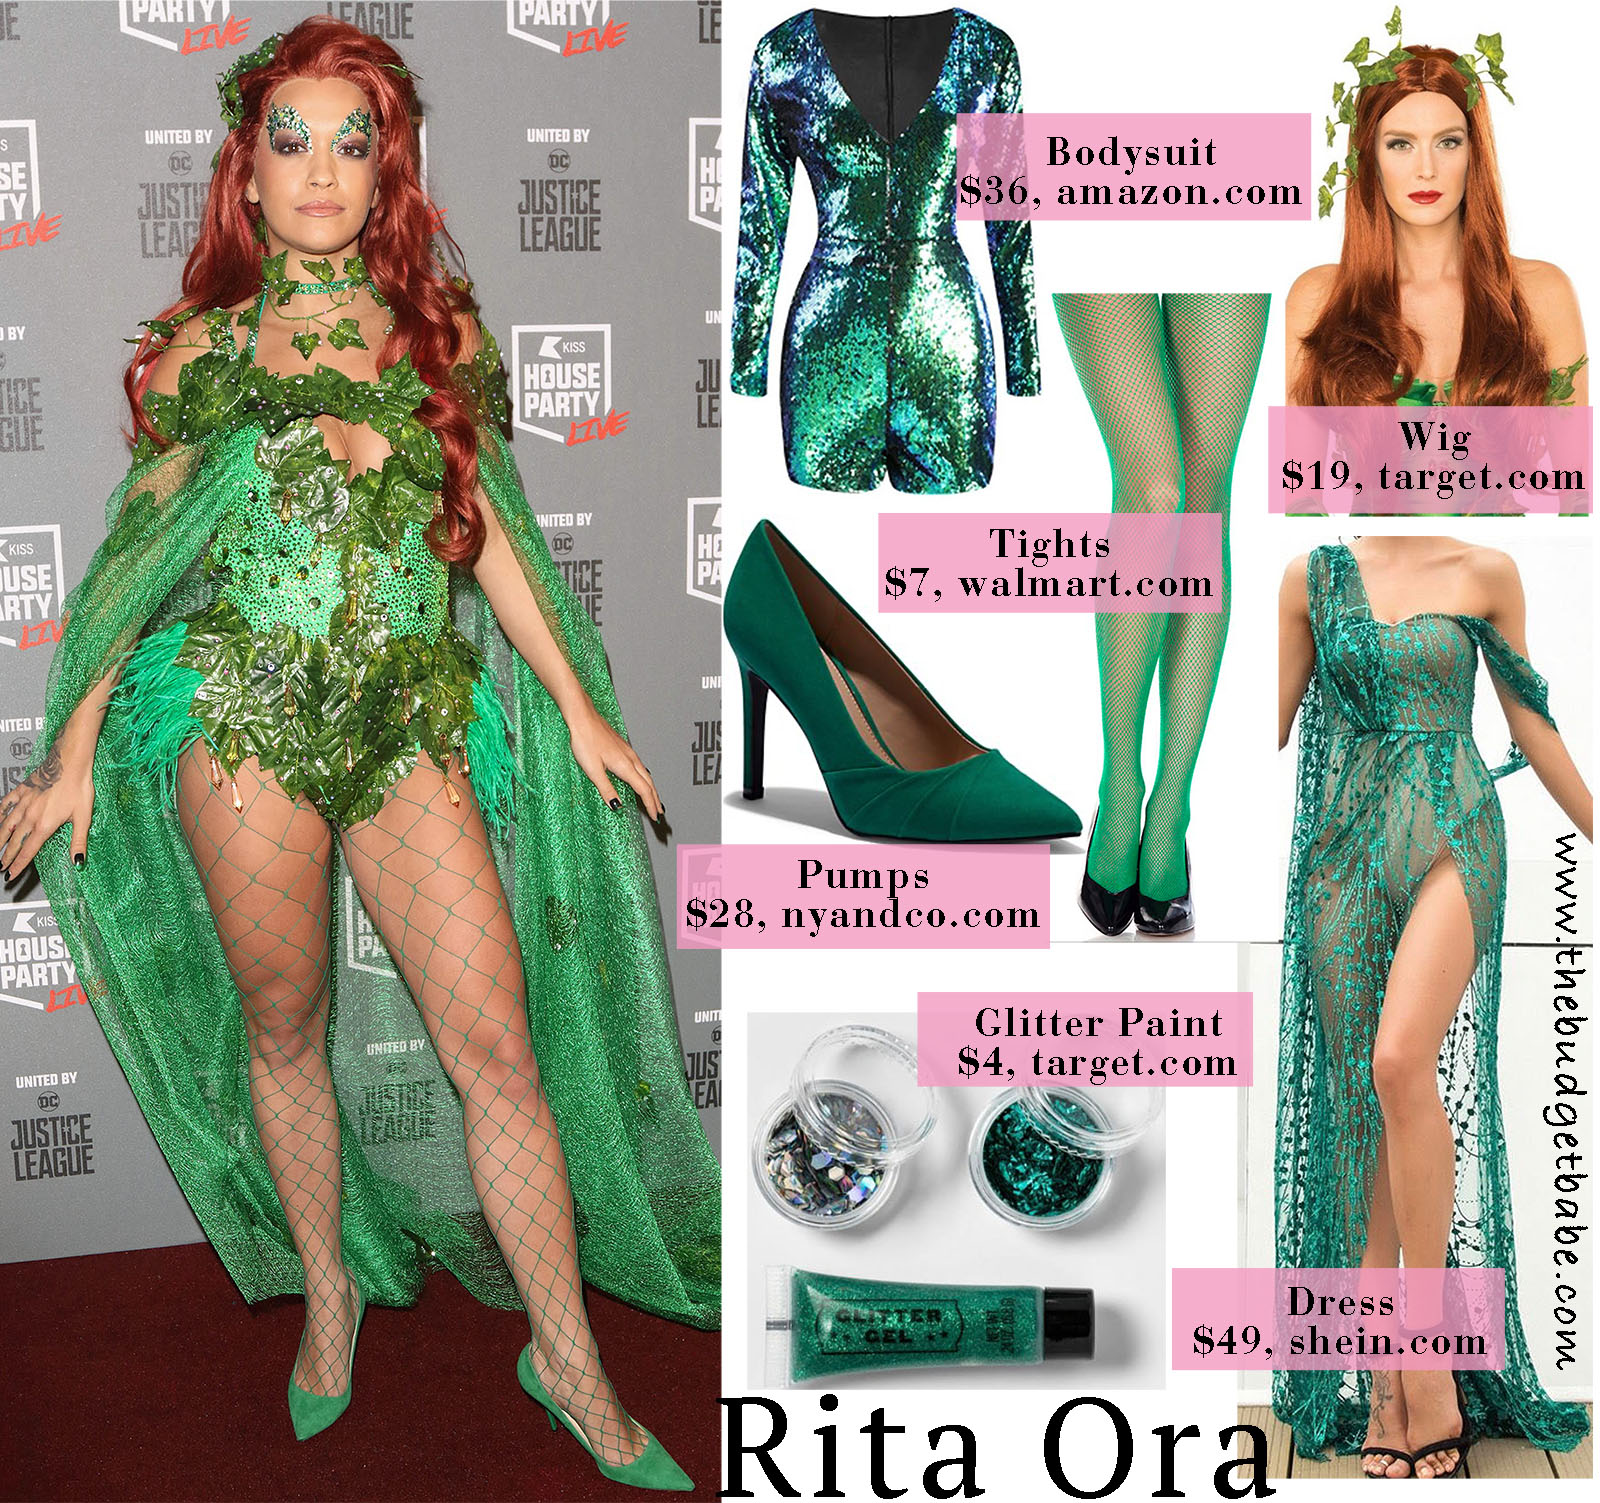 Rita Ora turns heads in a bright green costume!